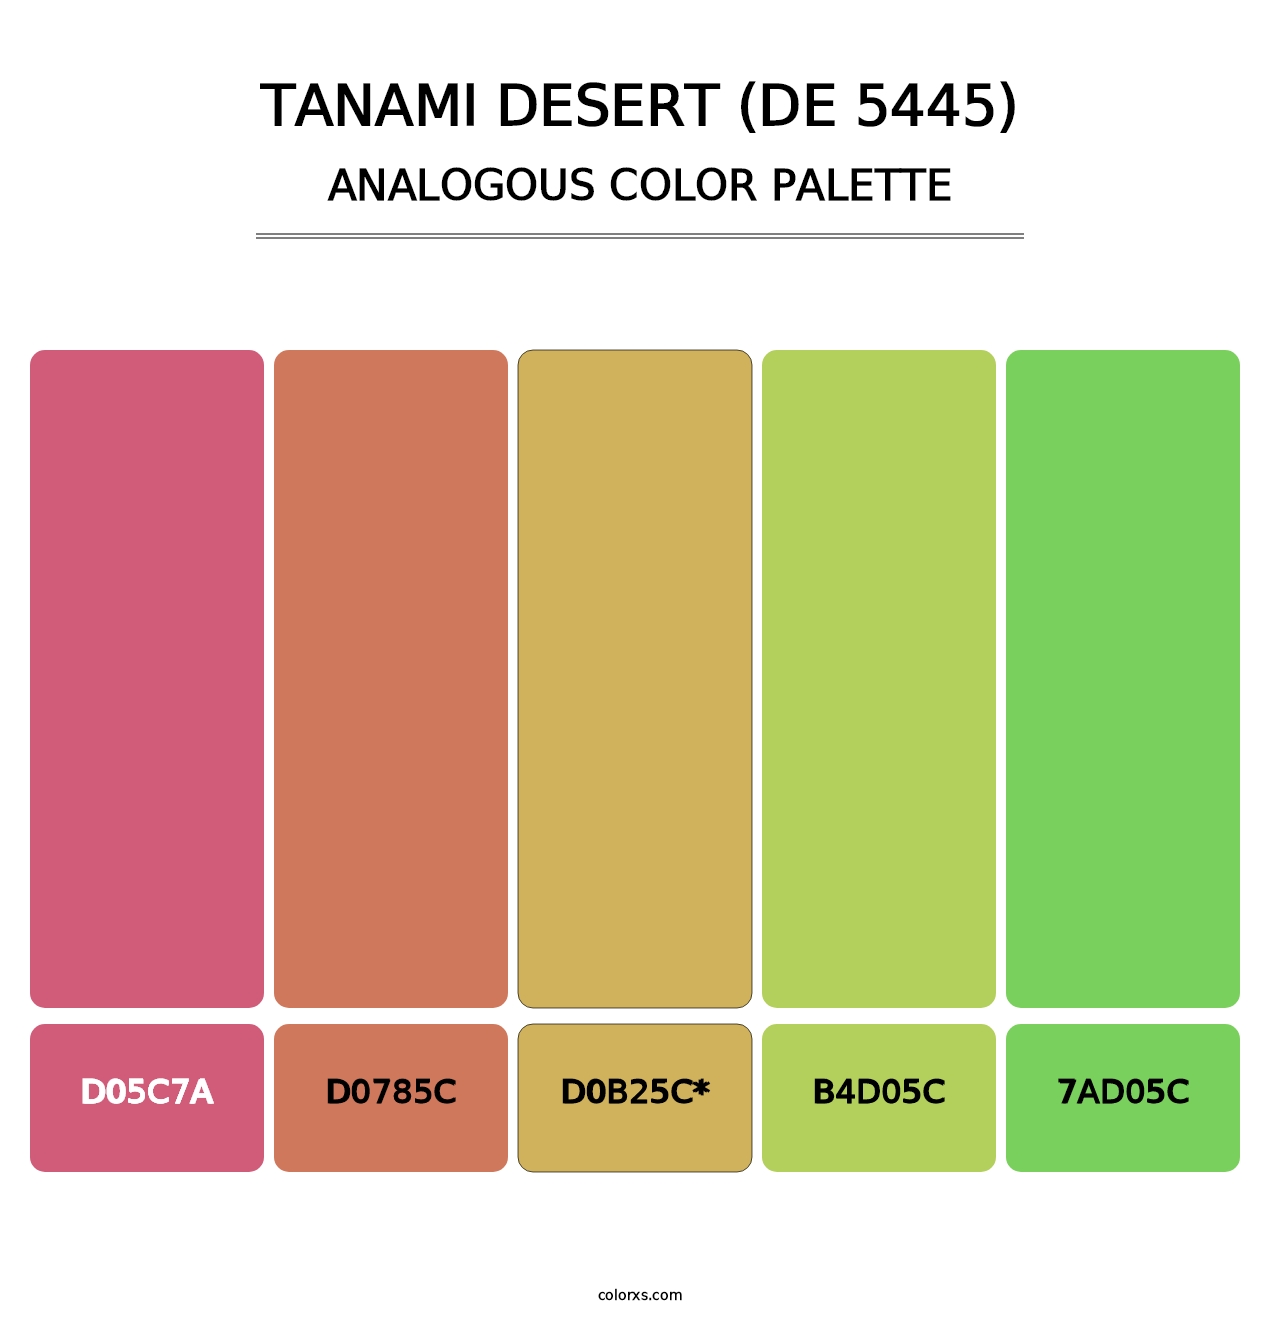 Tanami Desert (DE 5445) - Analogous Color Palette